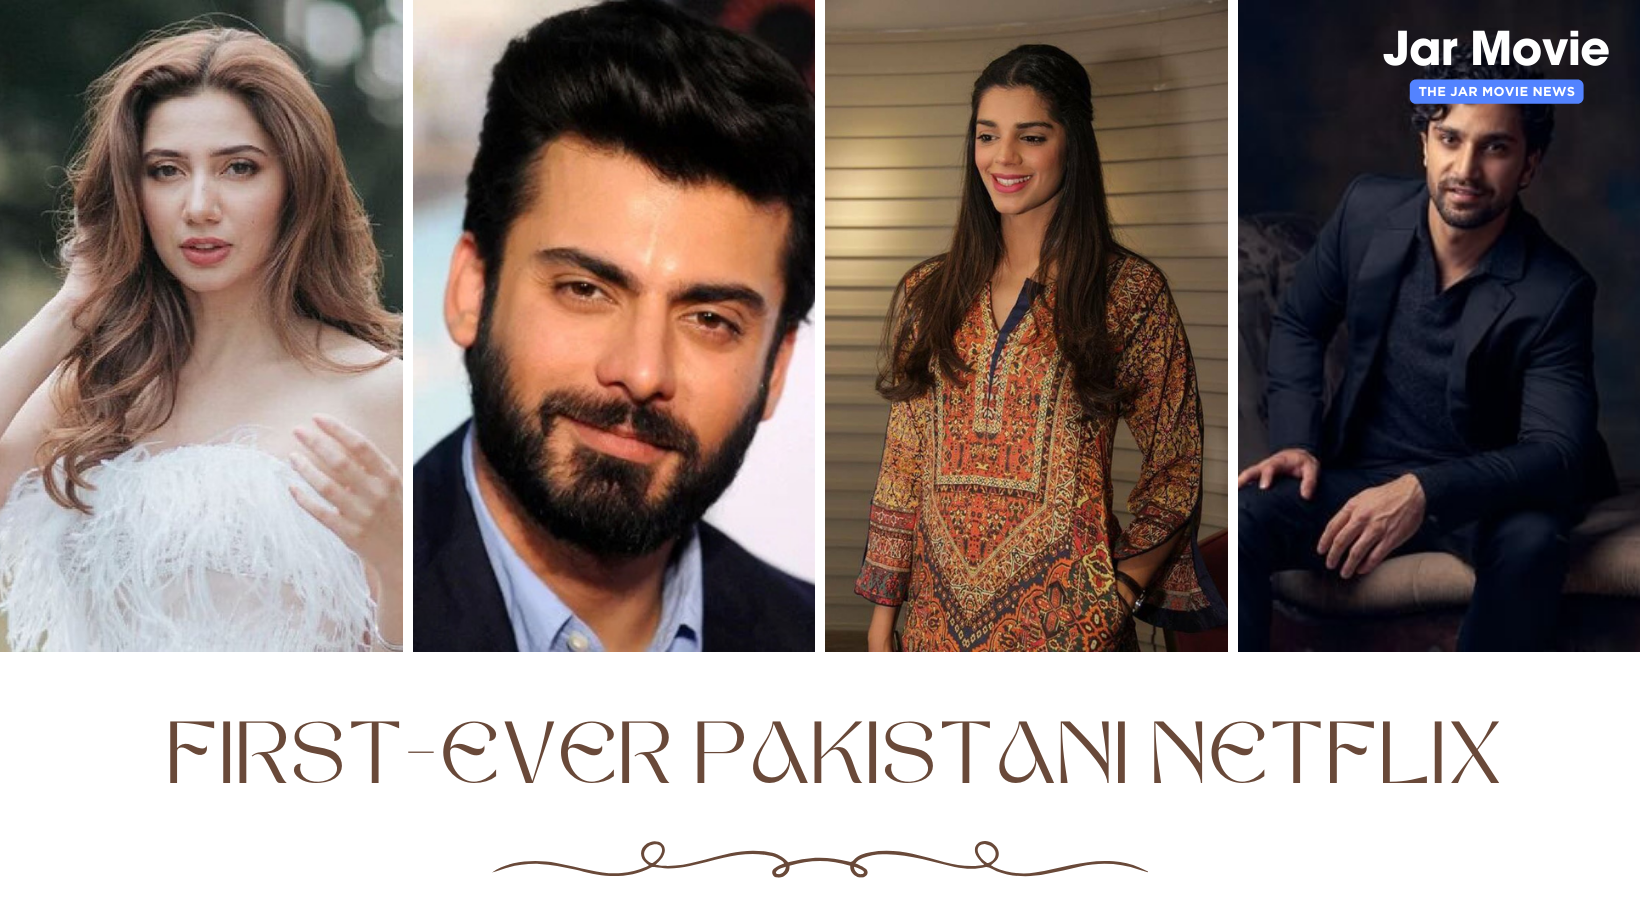 Sanam, Ahad, Fawad, and Mahira play the key characters in the inaugural Pakistani Netflix original.